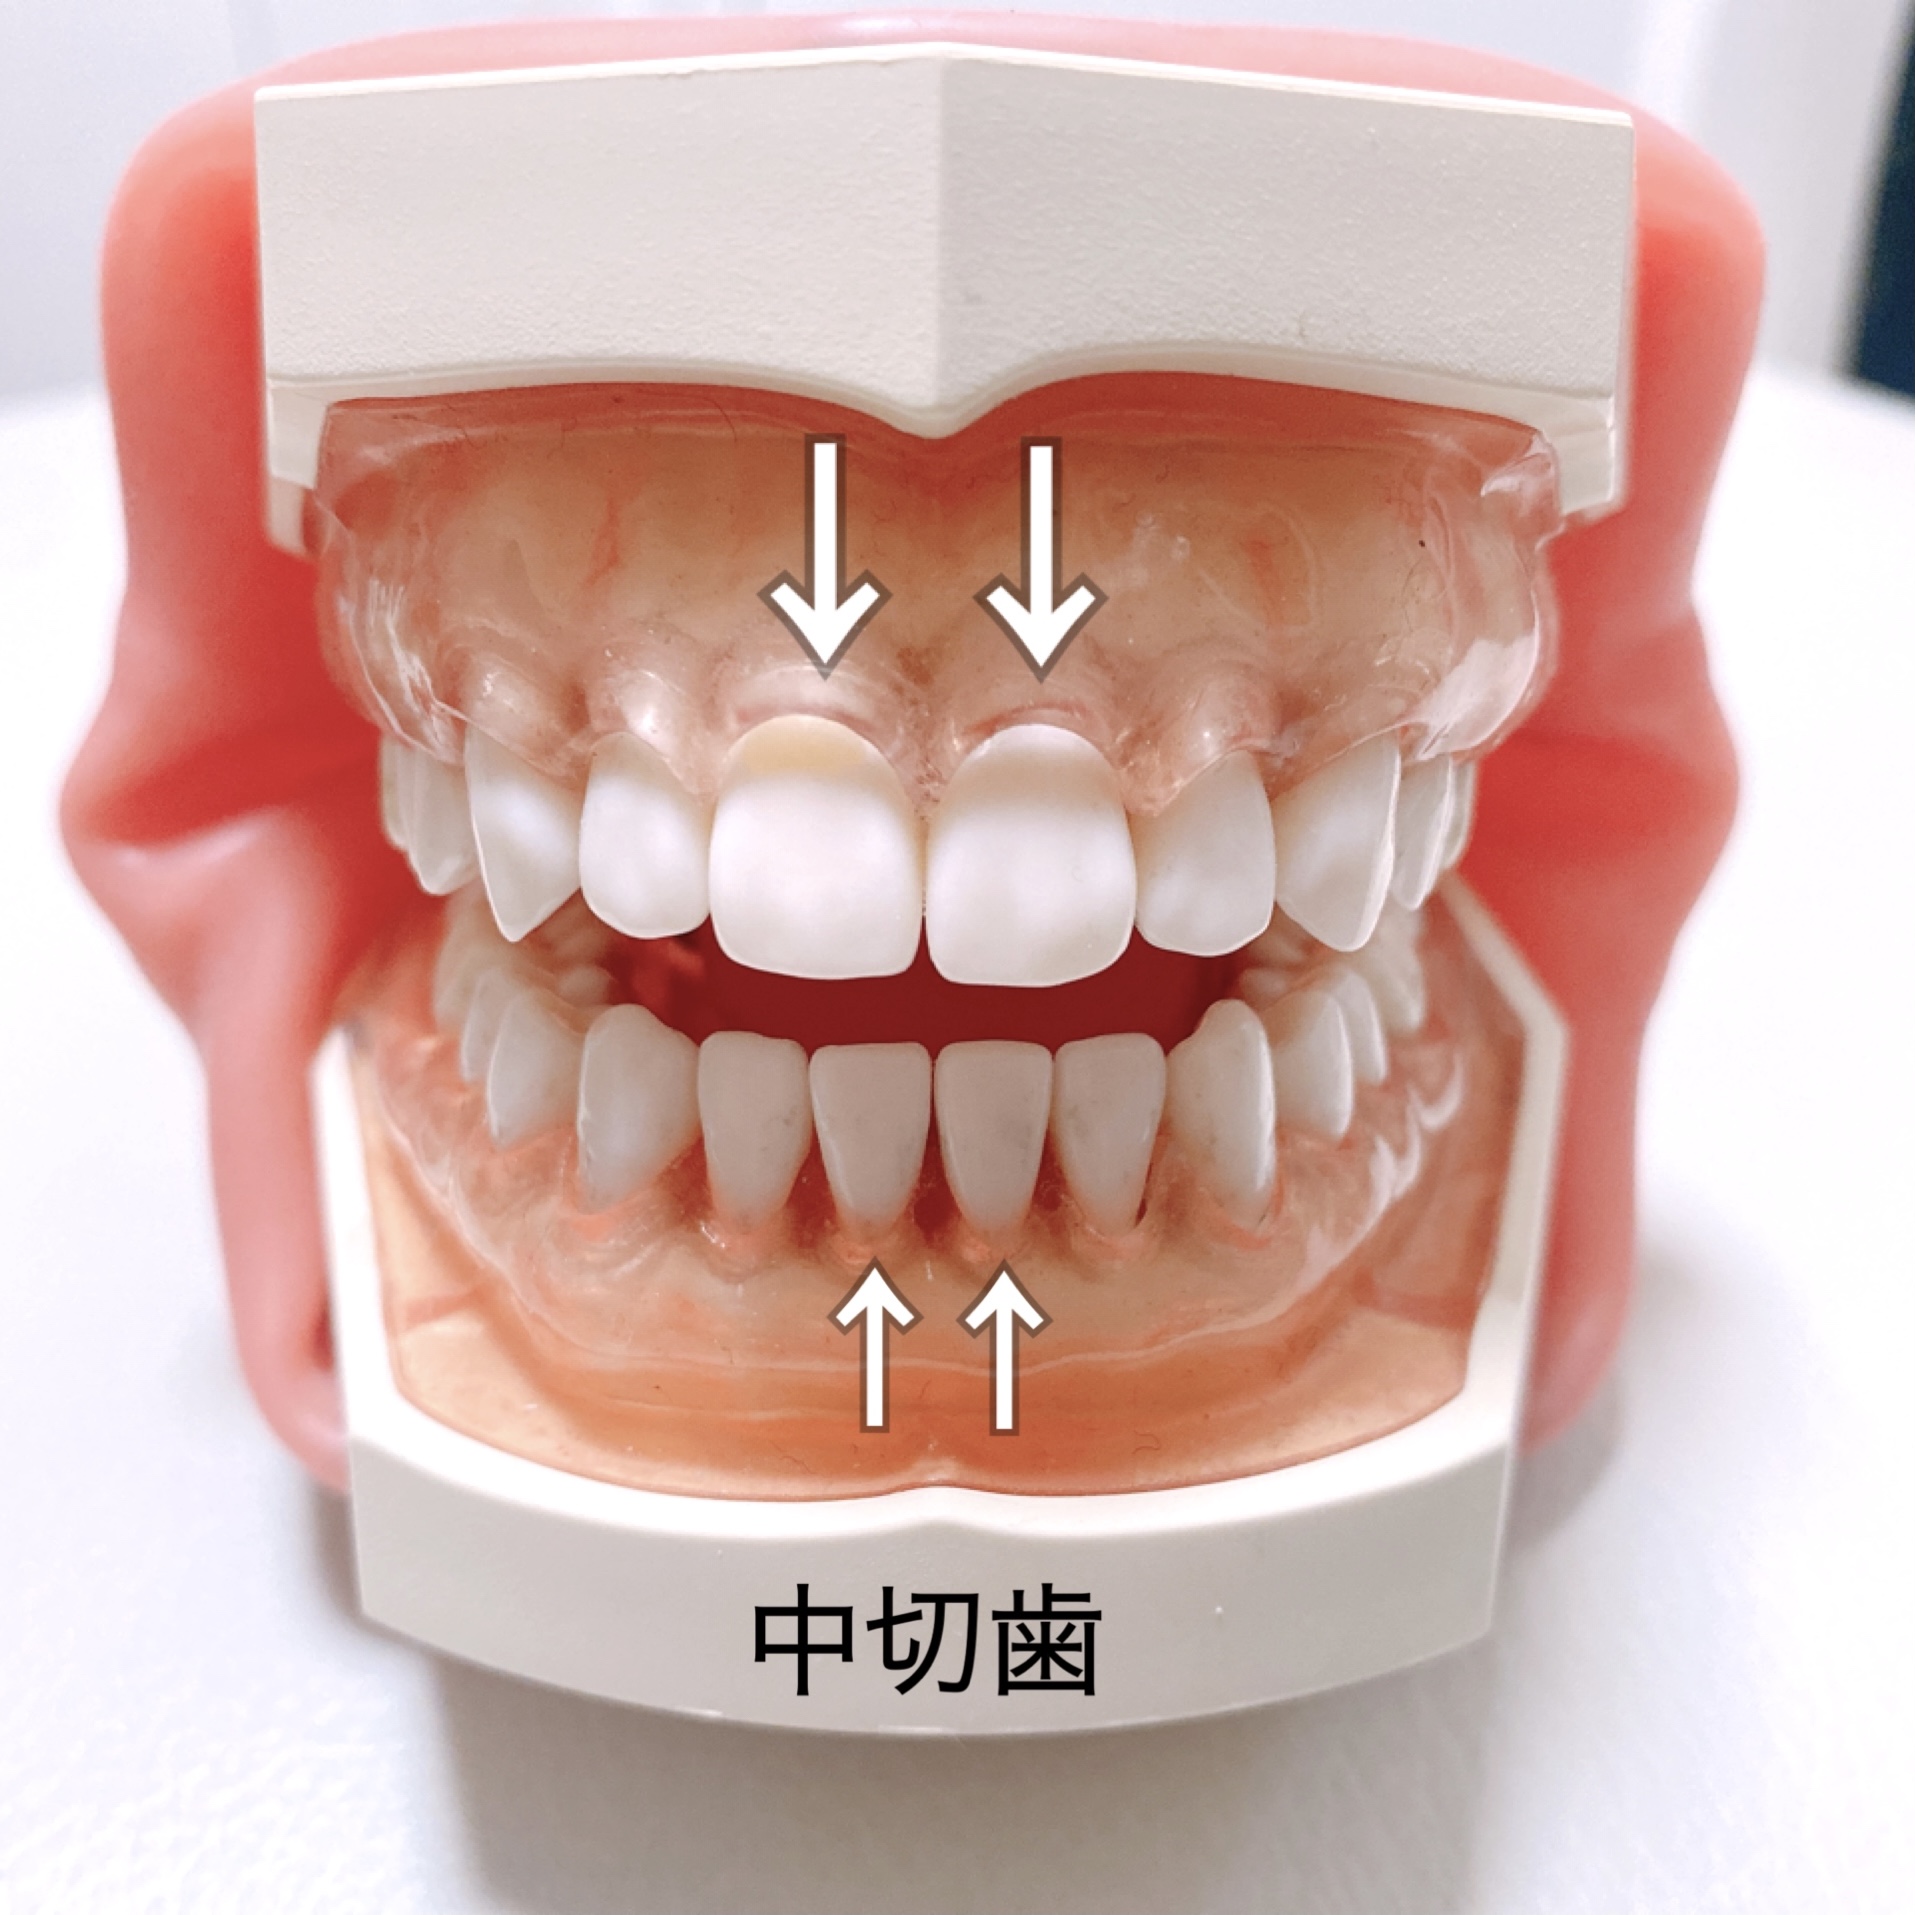 中切歯